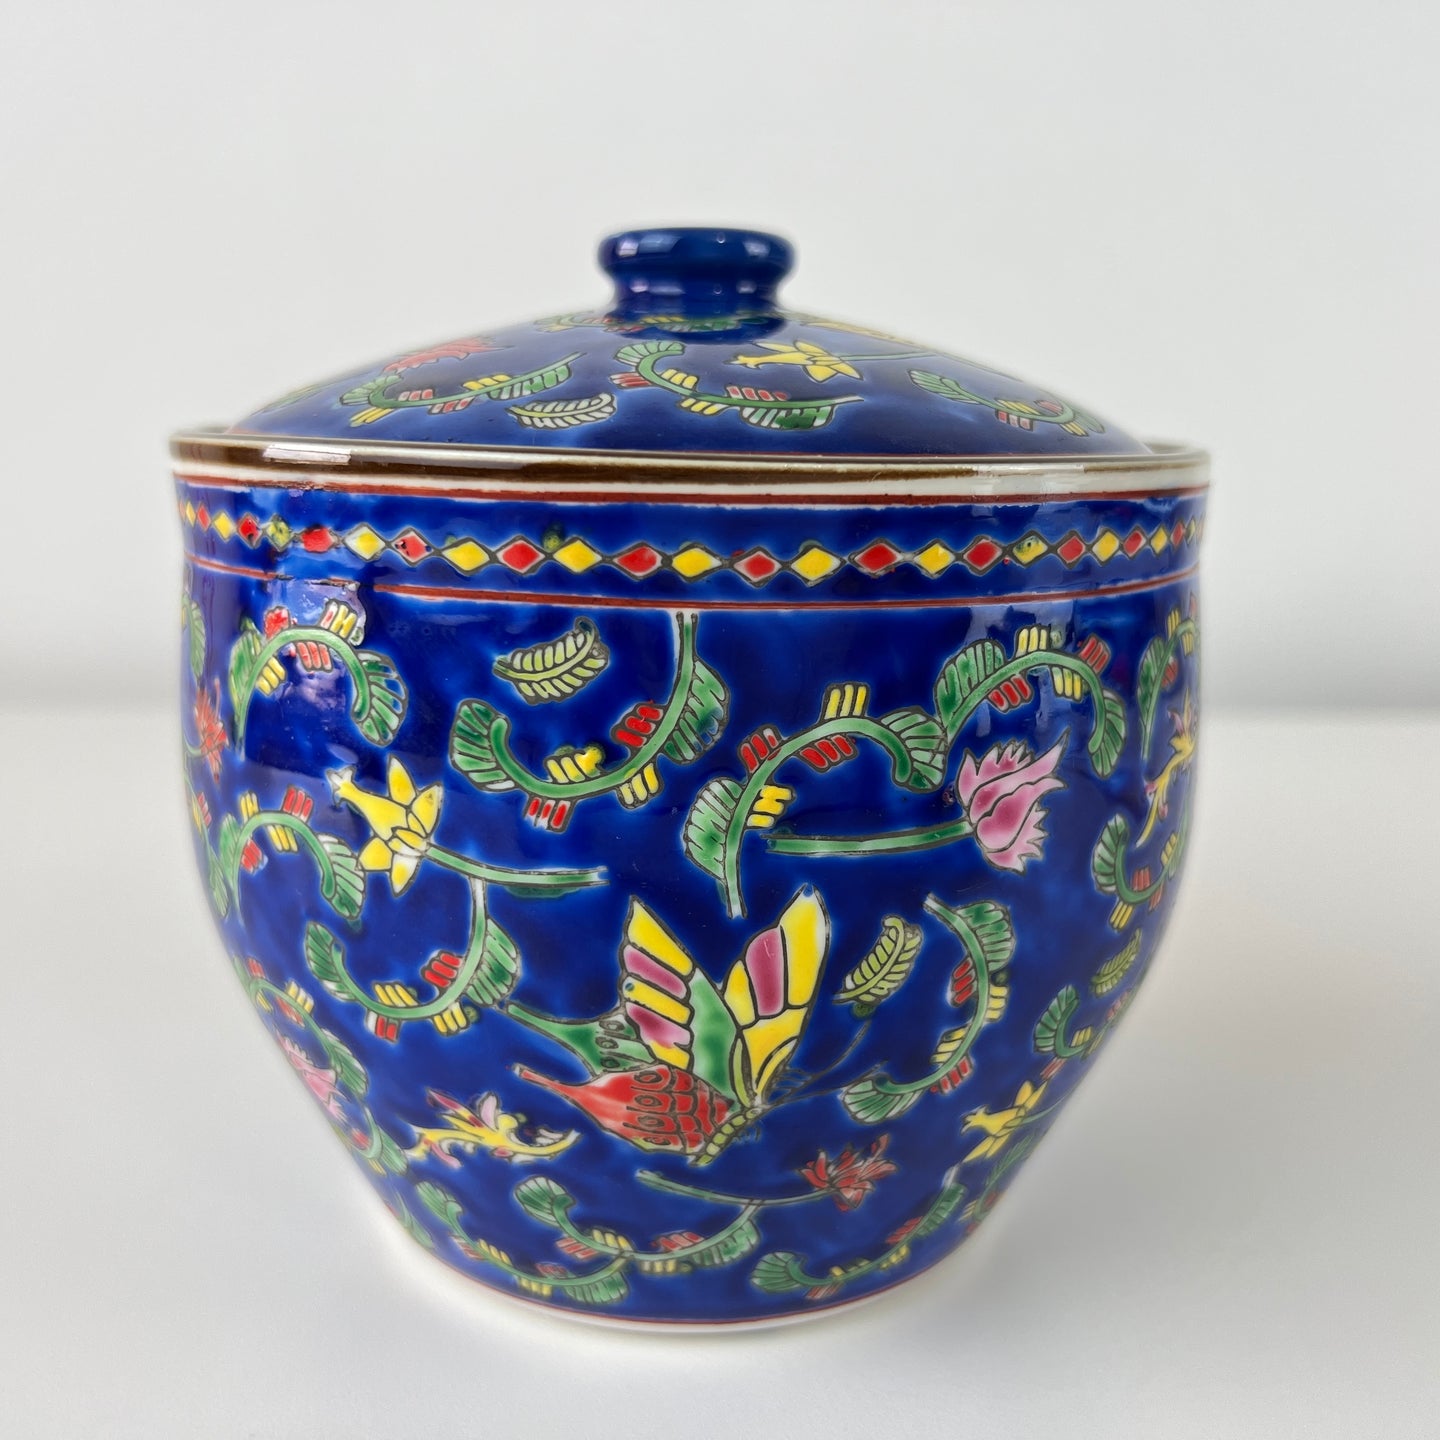 Vintage Bone China Jar & Lid with Butterflies & Flowers